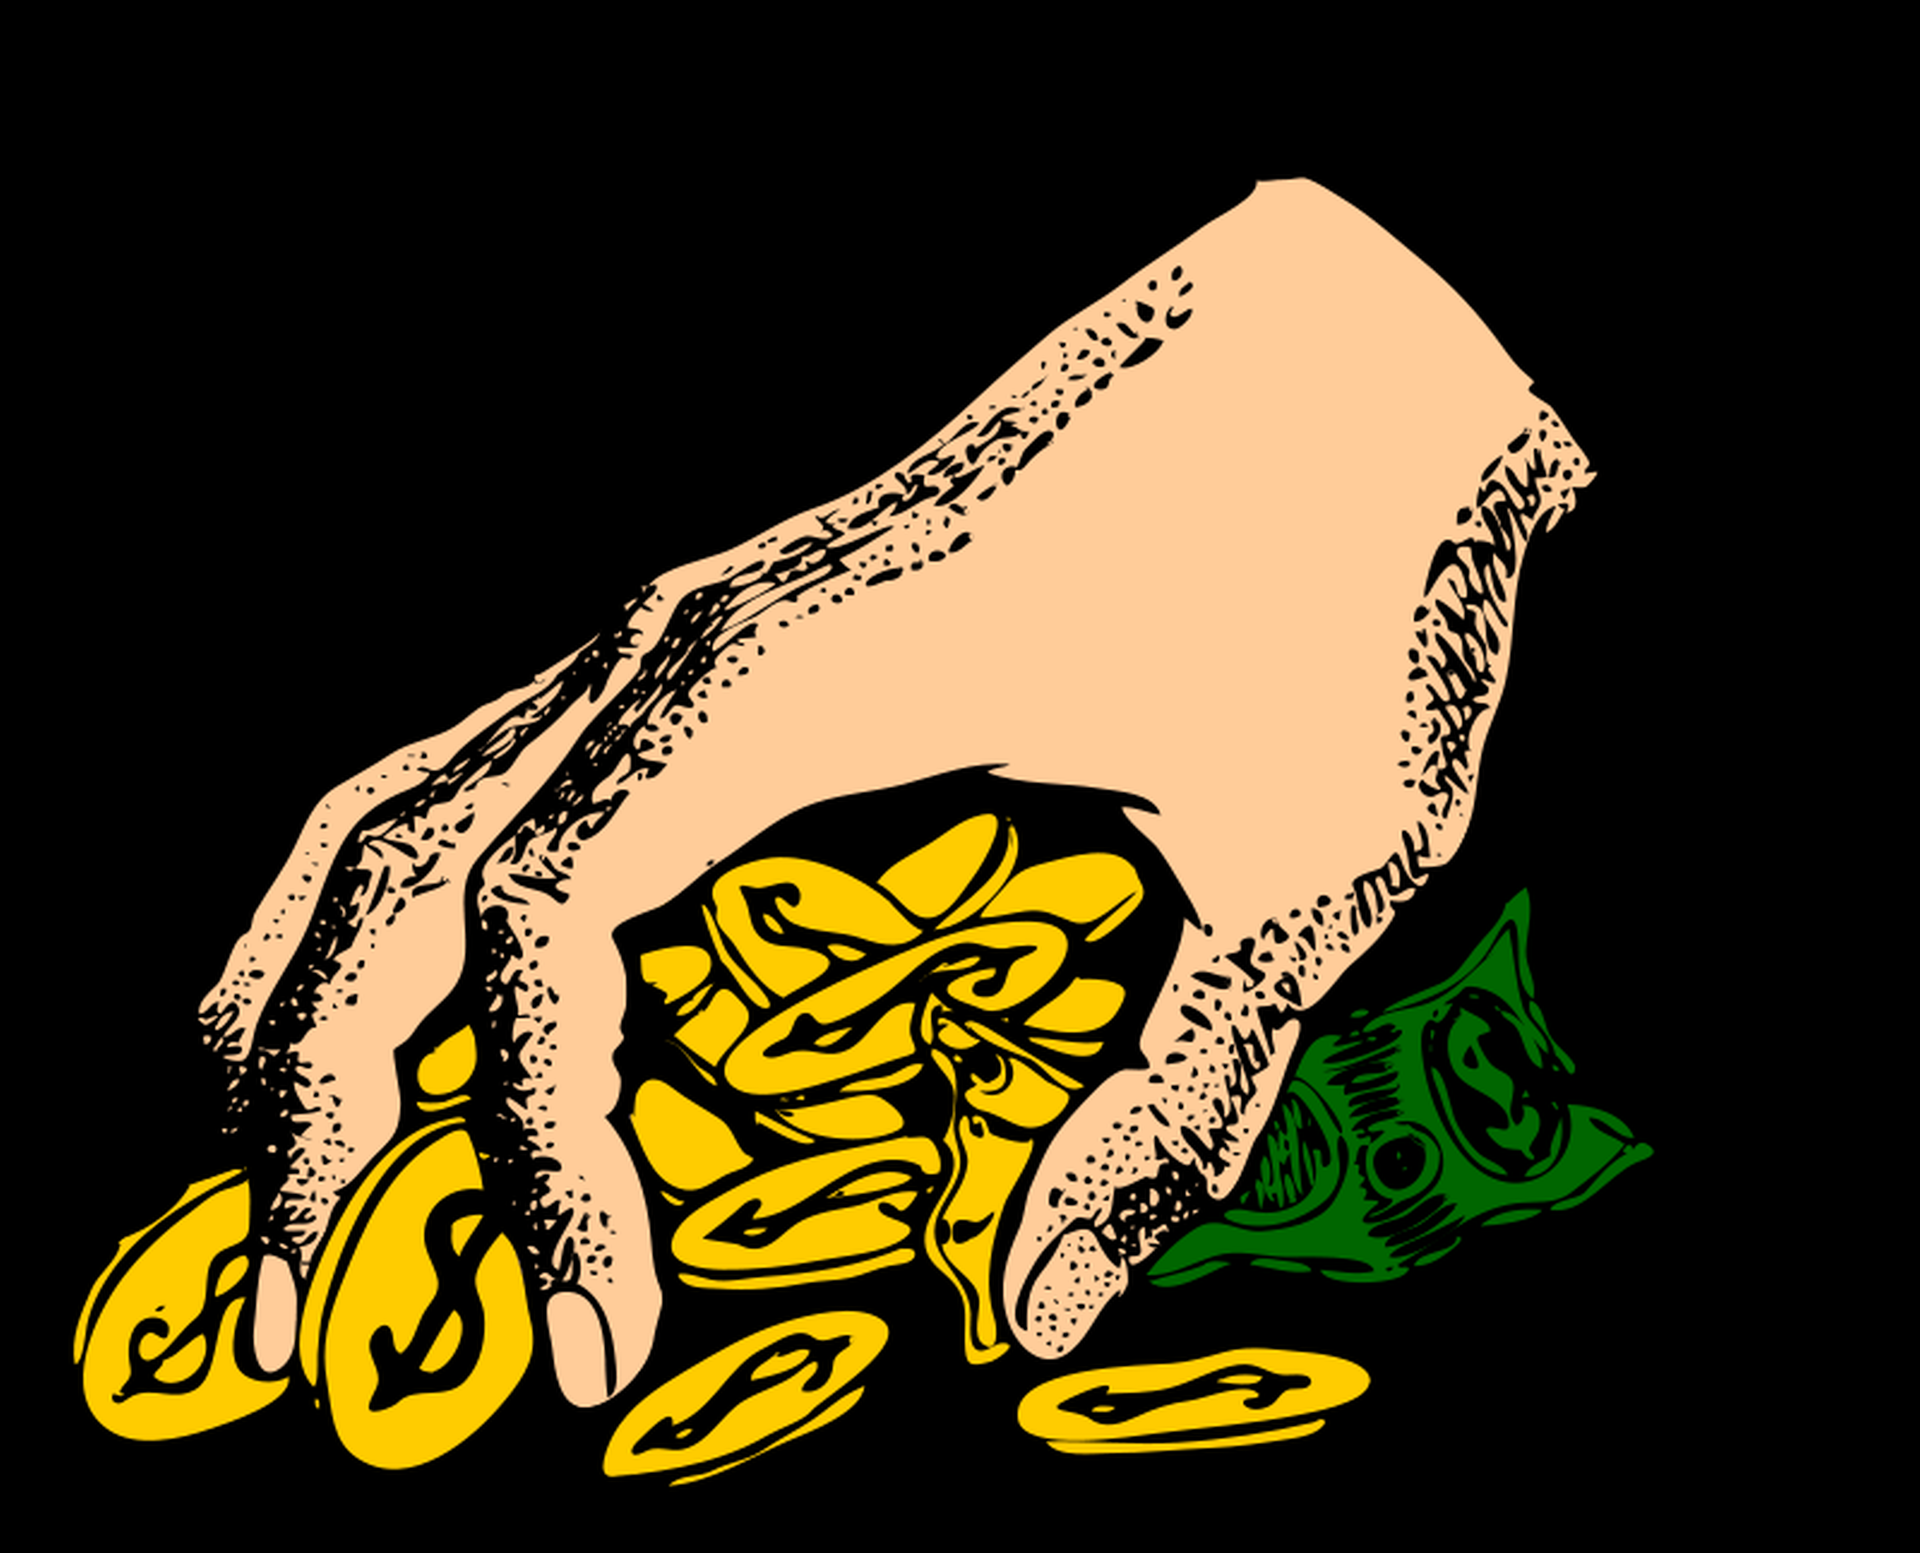 Ilustracja przedstawia grafikę ręki sięgające po pieniądze.